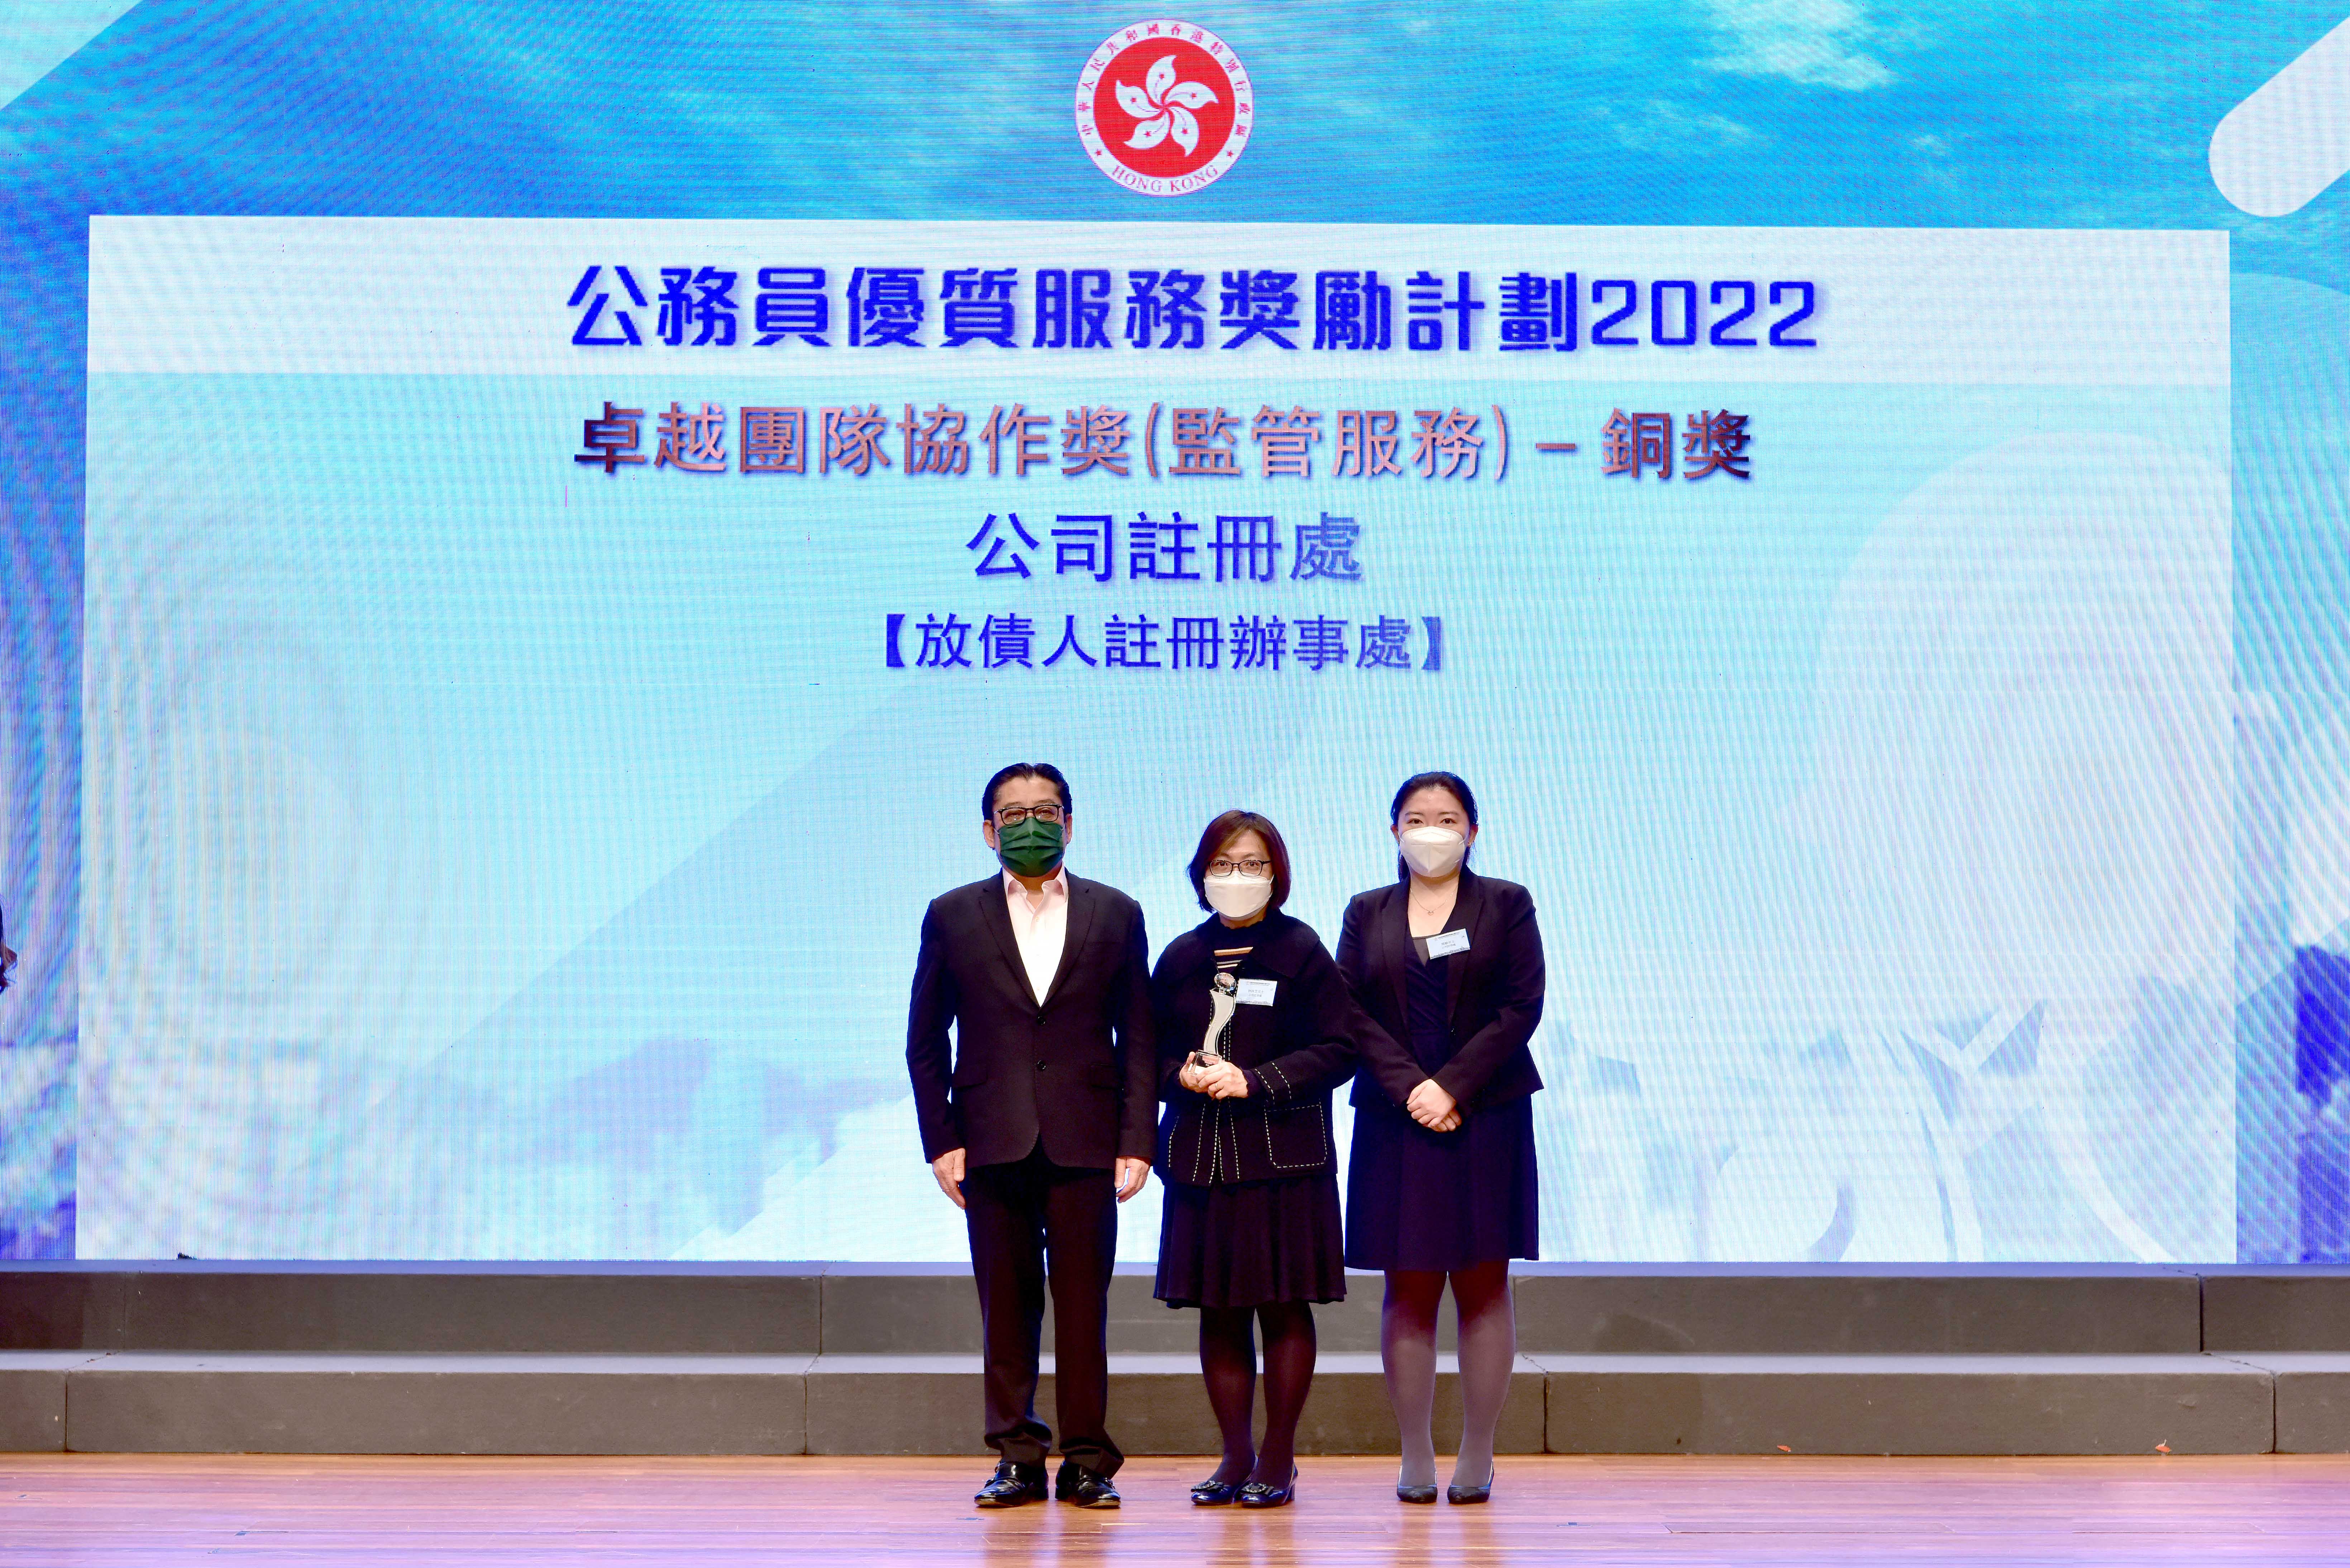 副公司註冊處經理林詠芝女士（中）由助理公司註冊處經理周敏女士（右）陪同下，在頒獎典禮上接受「卓越團隊協作獎」（監管服務）的銅獎。